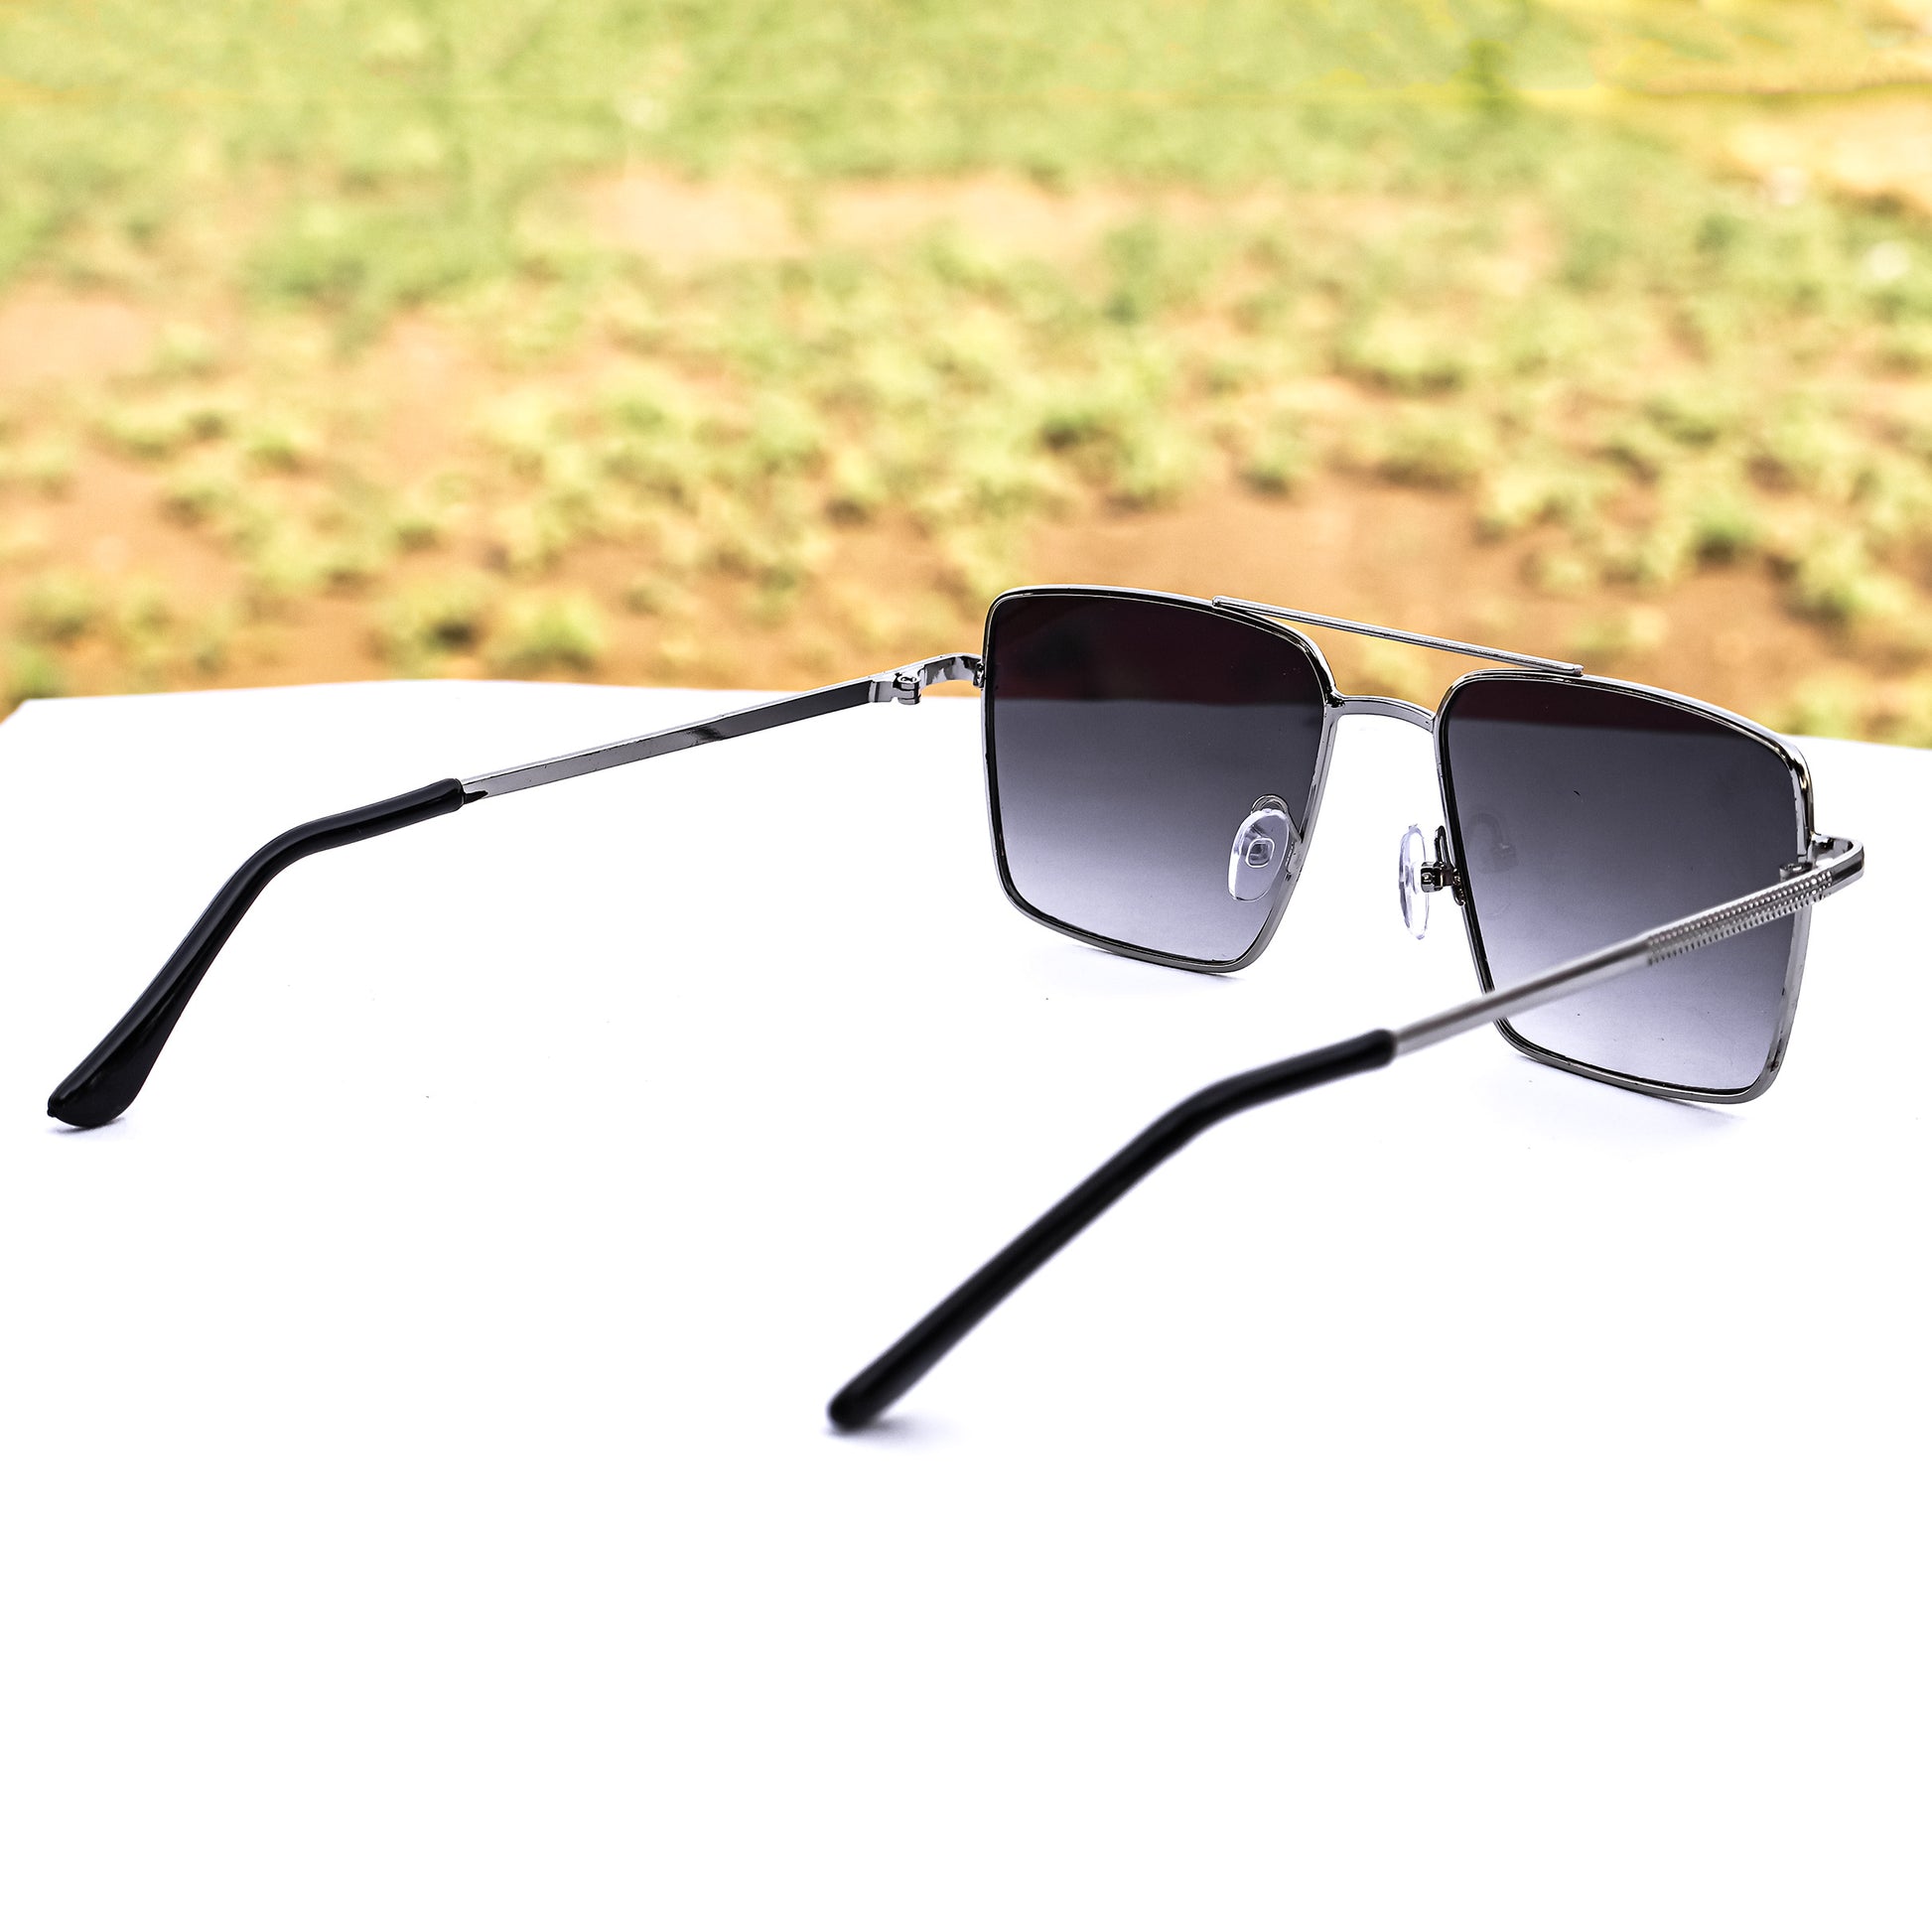 Jiebo Black Full Rim Square Sunglasses